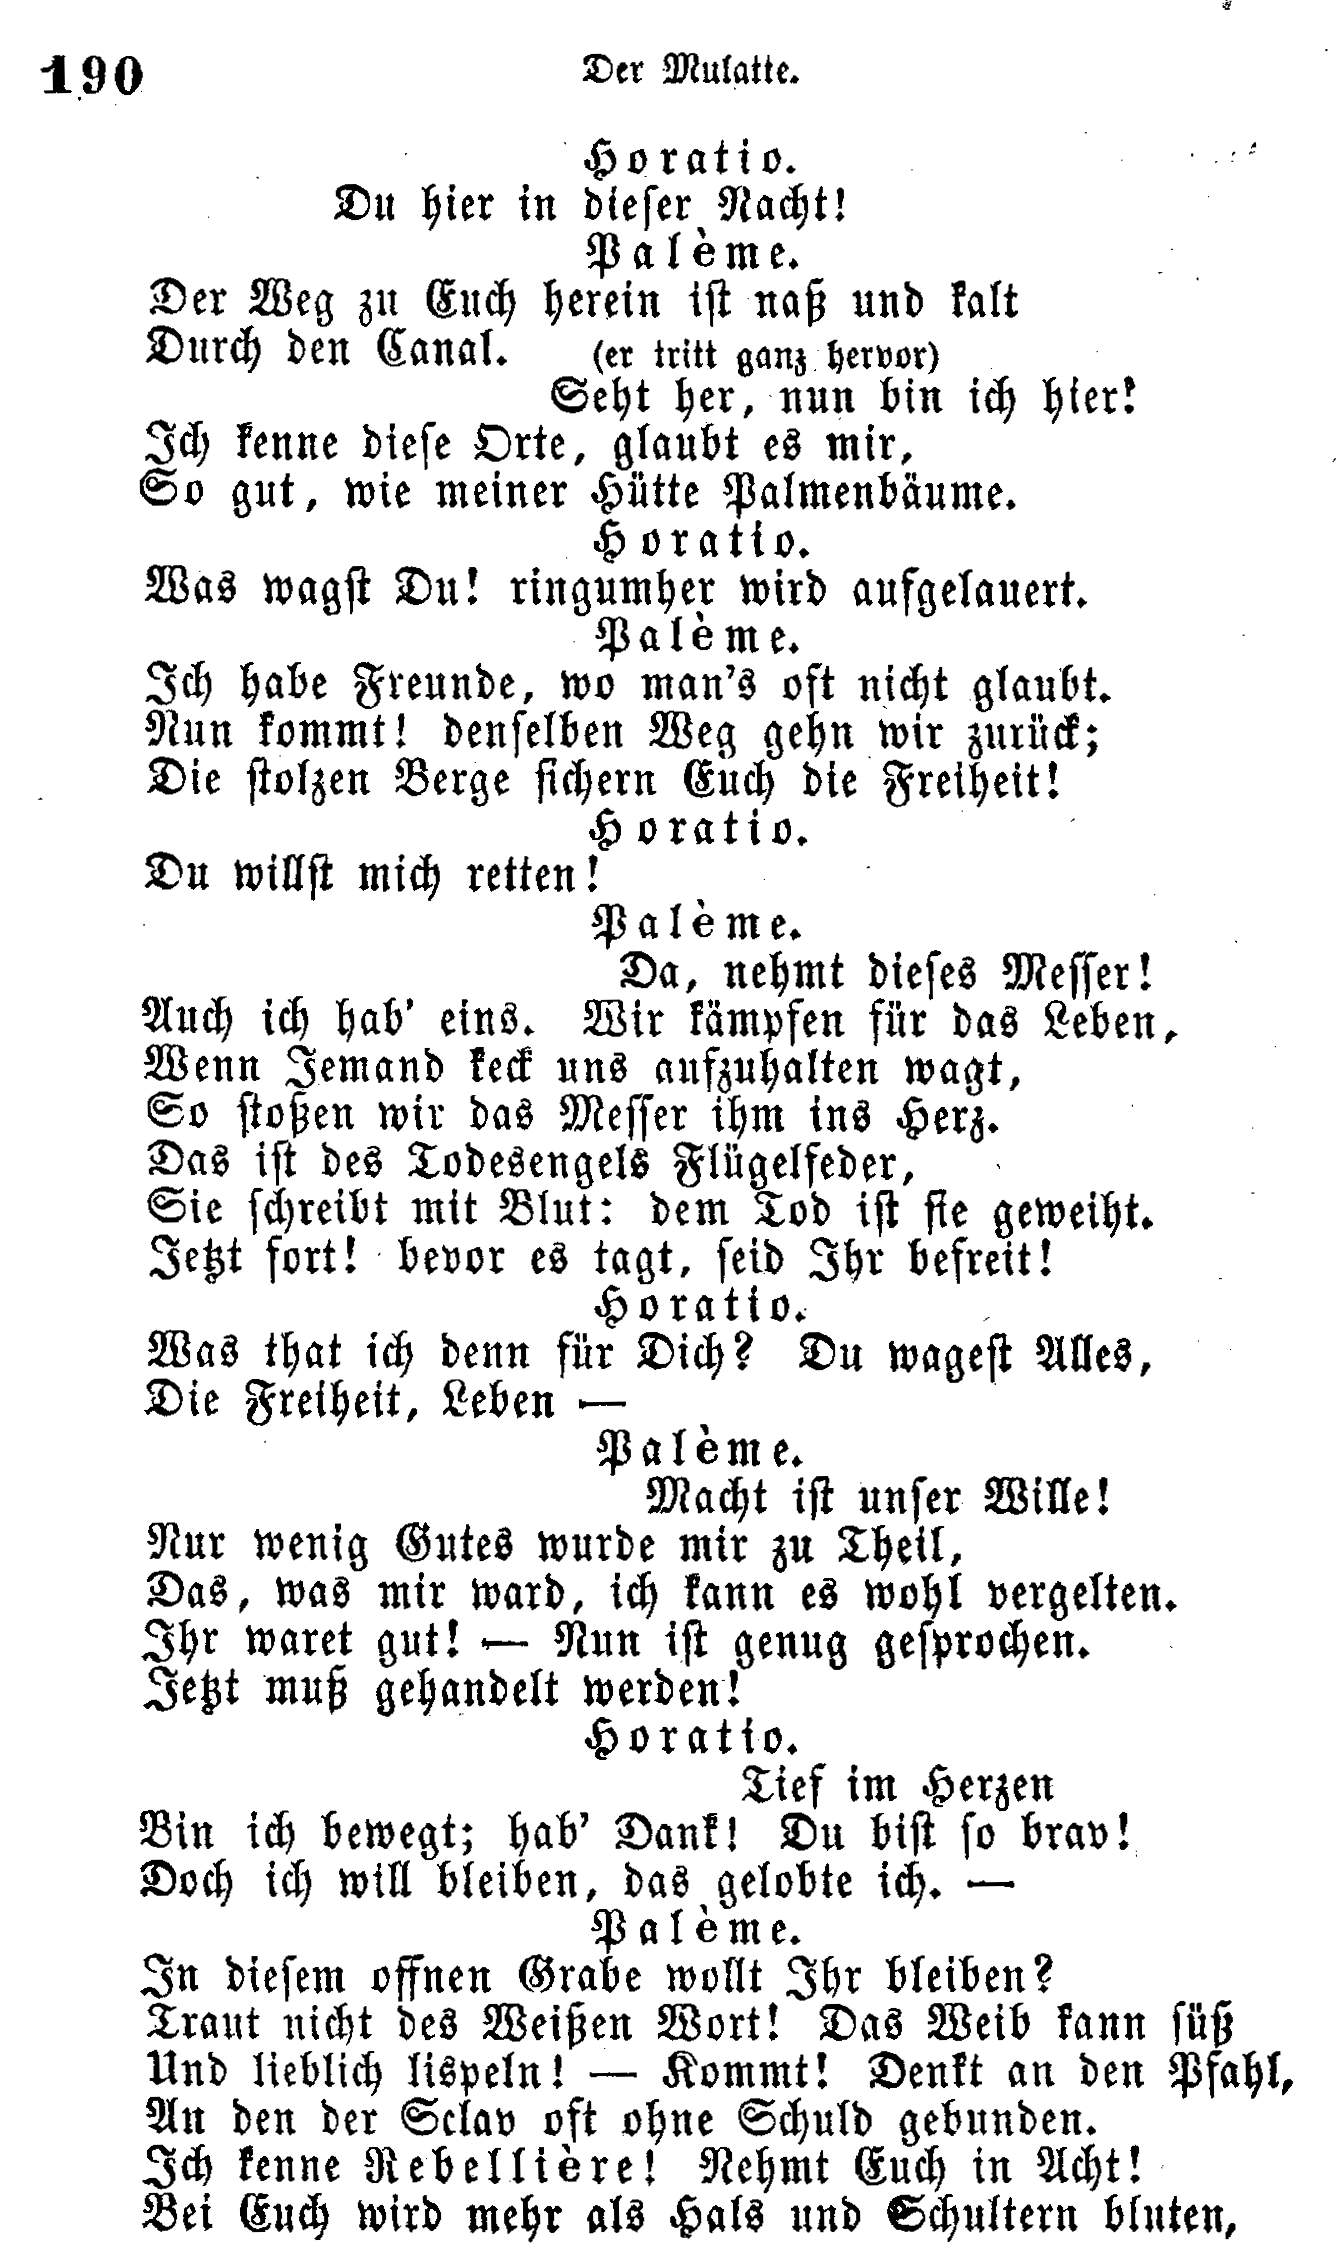 H.C. Andersen: Der Mulatte page  190